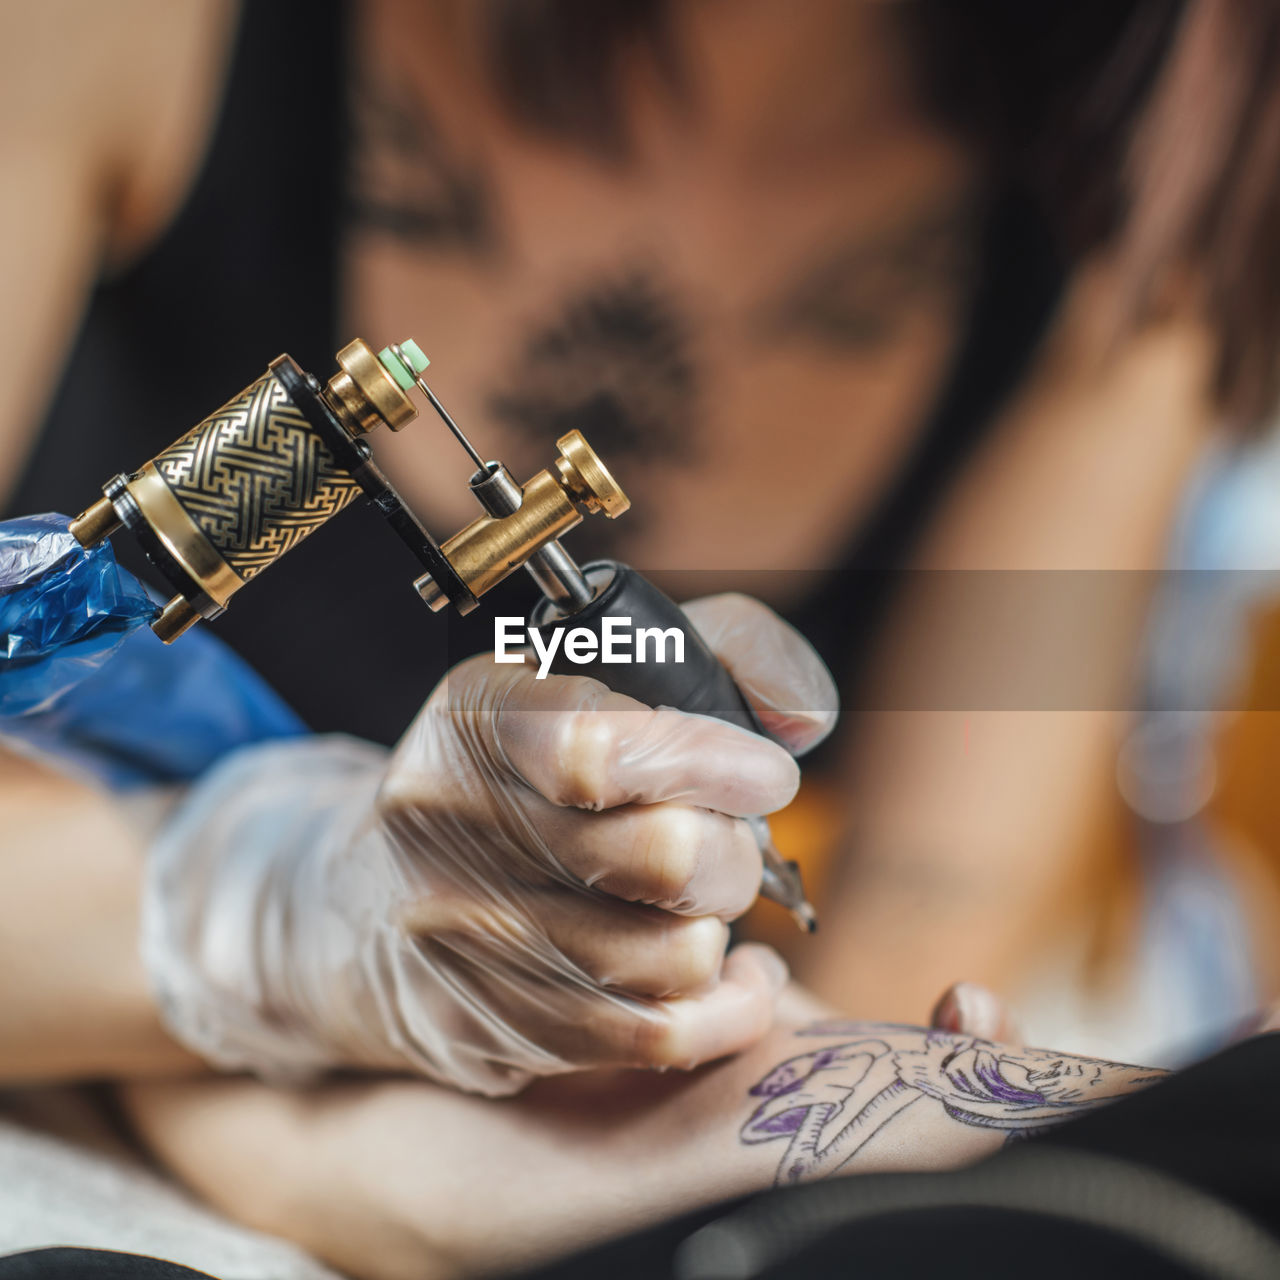 Tattoo machine close up. tattoo artist creating tattoo on a man's arm